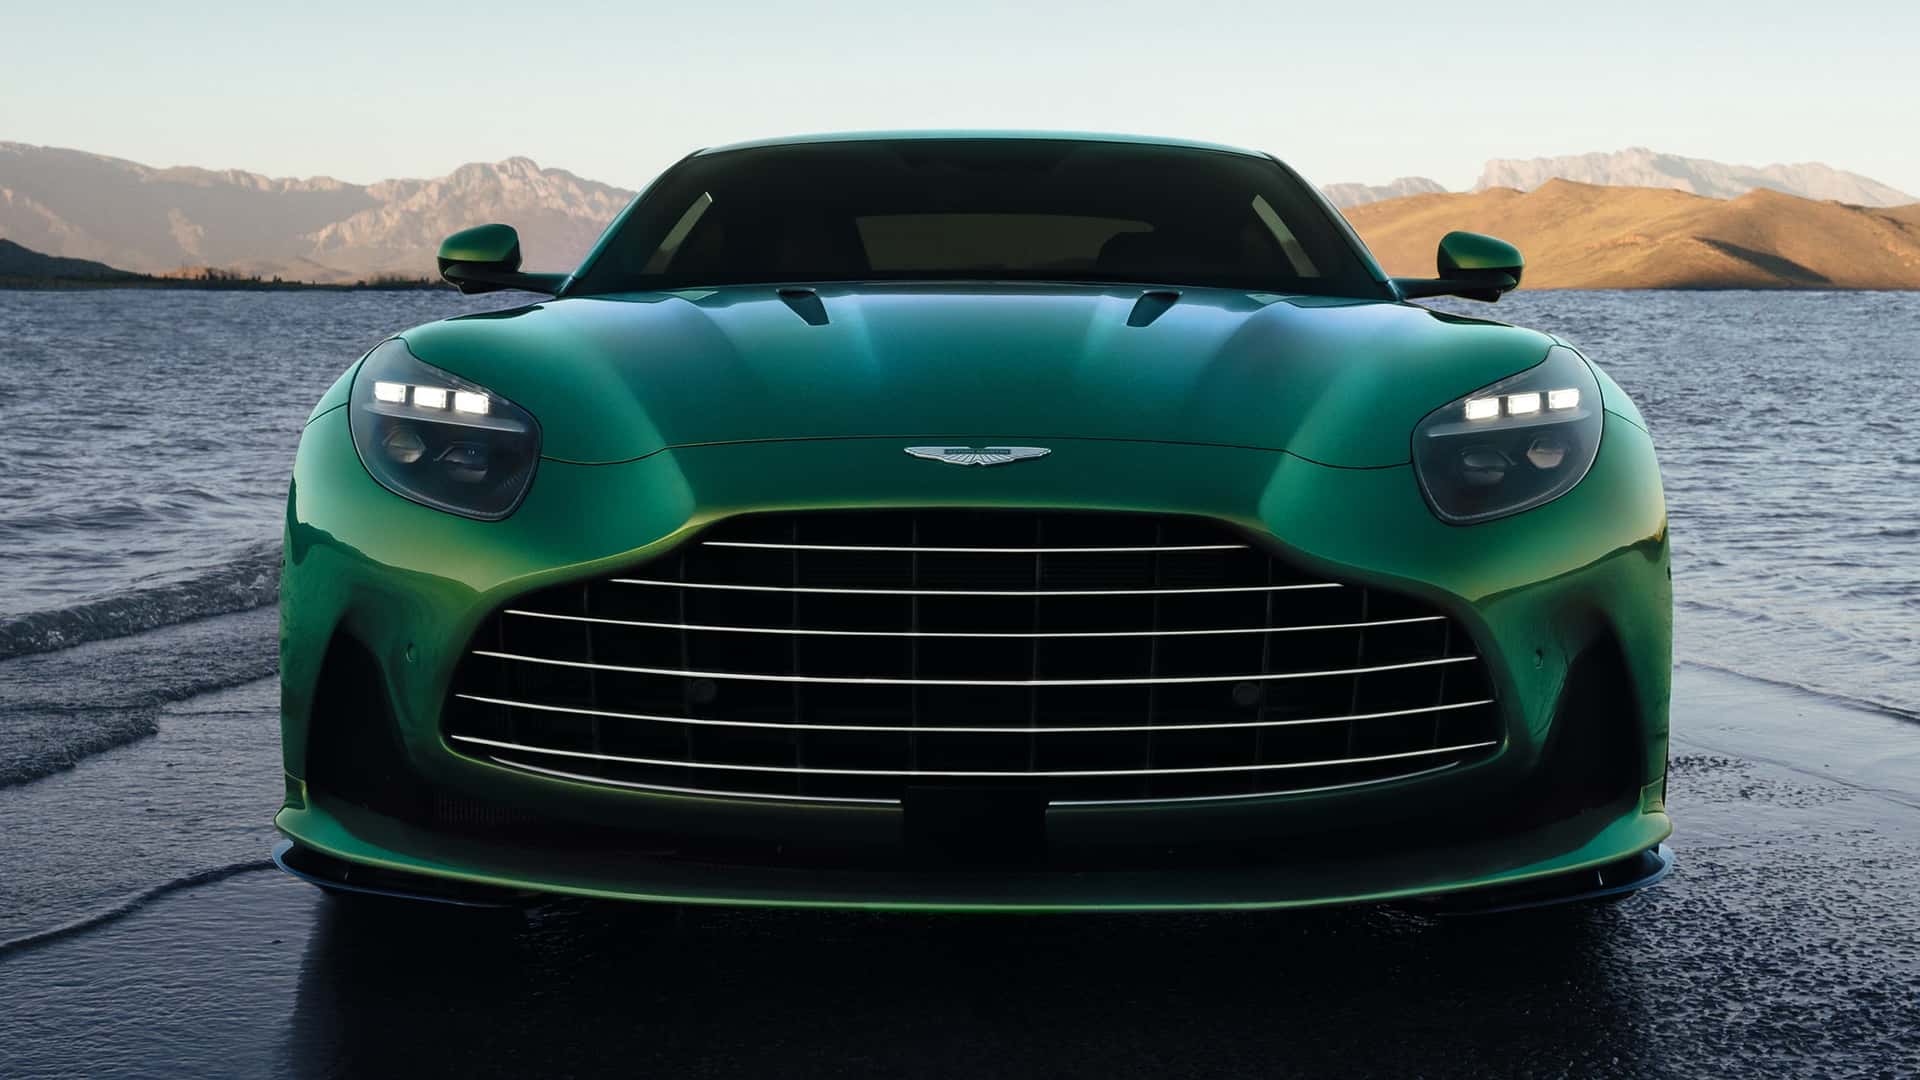 Aston Martin DB12 lug-in hybrid